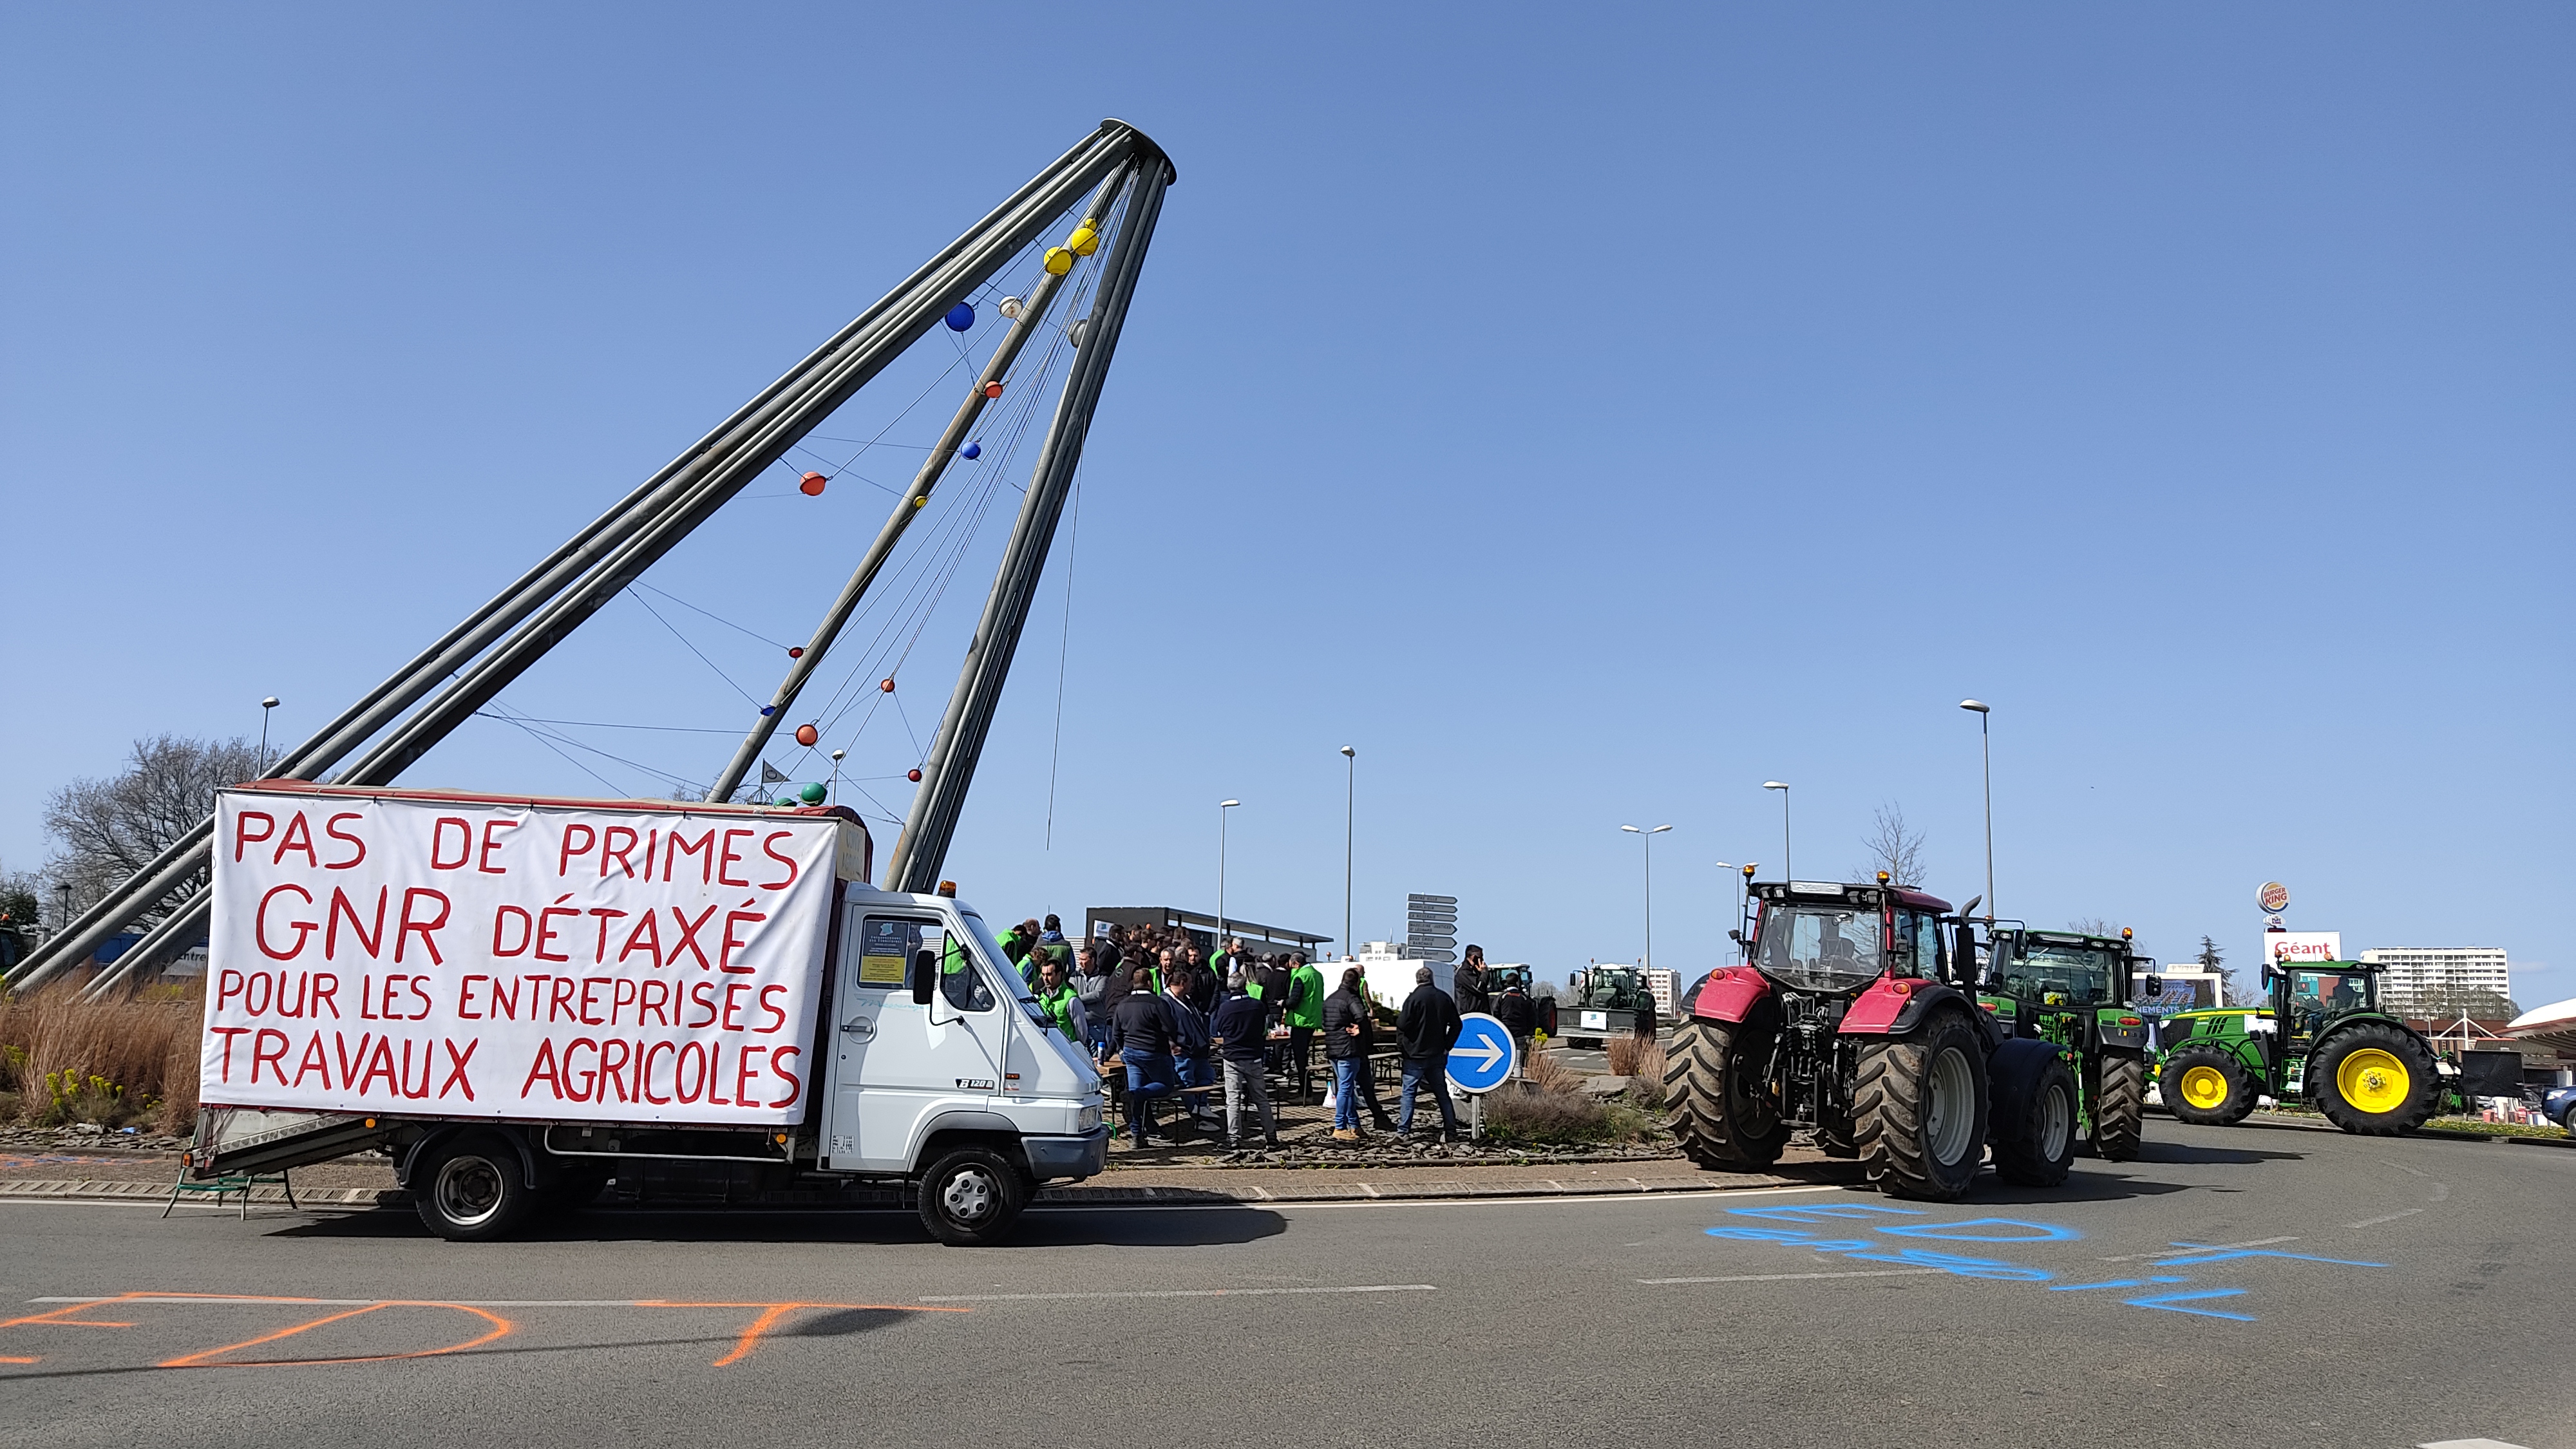 Les entreprise de travaux agricoles ont quitté l'Espace Anjou vers 14 h. ©RCF Anjou